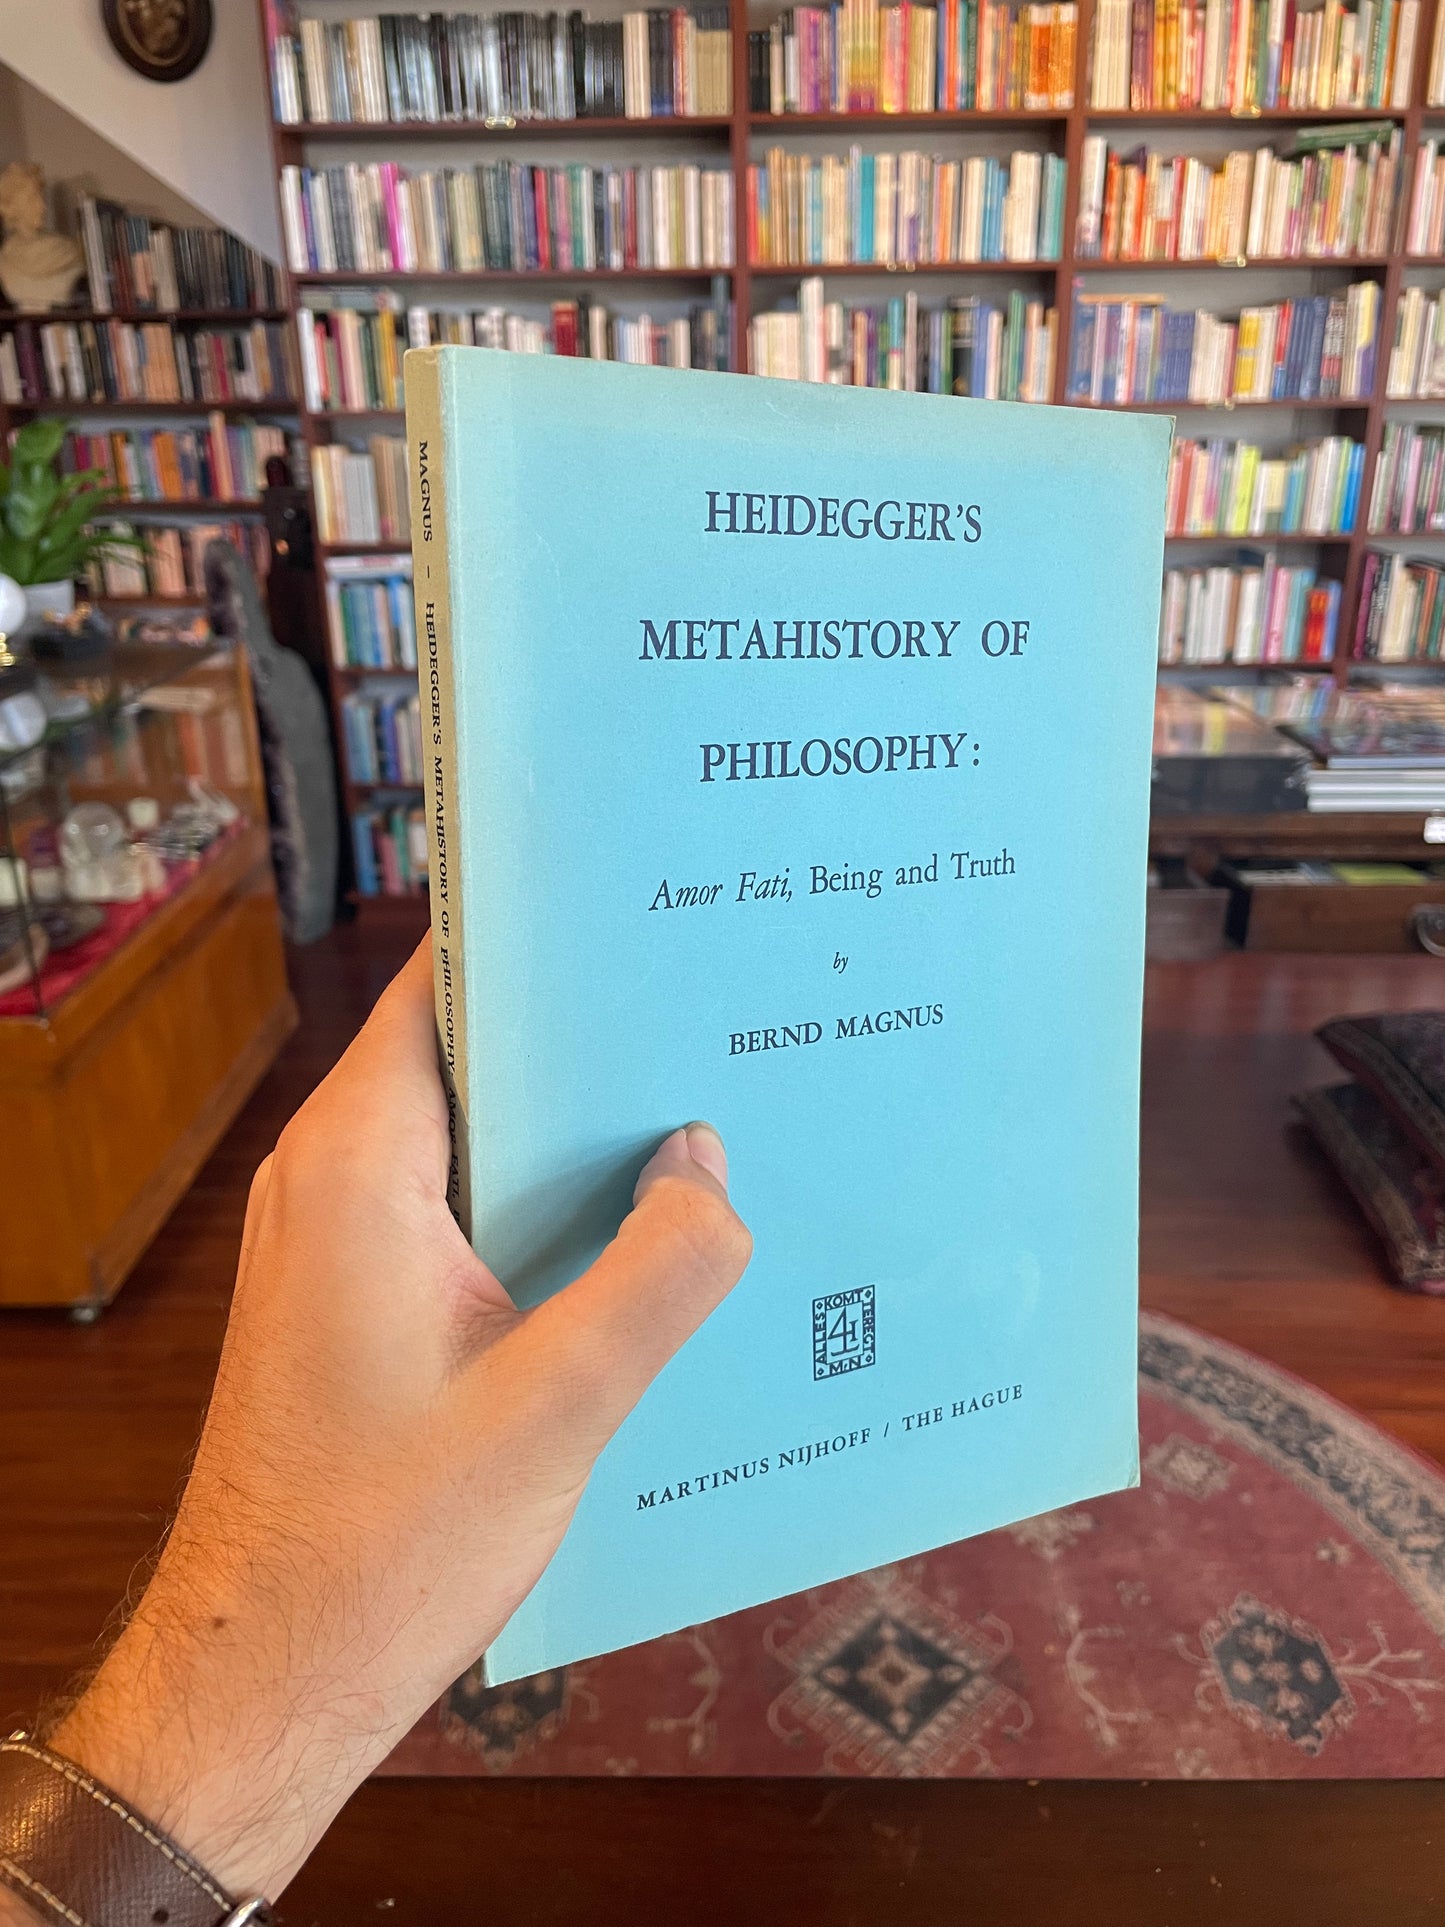 Heidegger’s Metahistory of Philosophy by Bernd Magnus